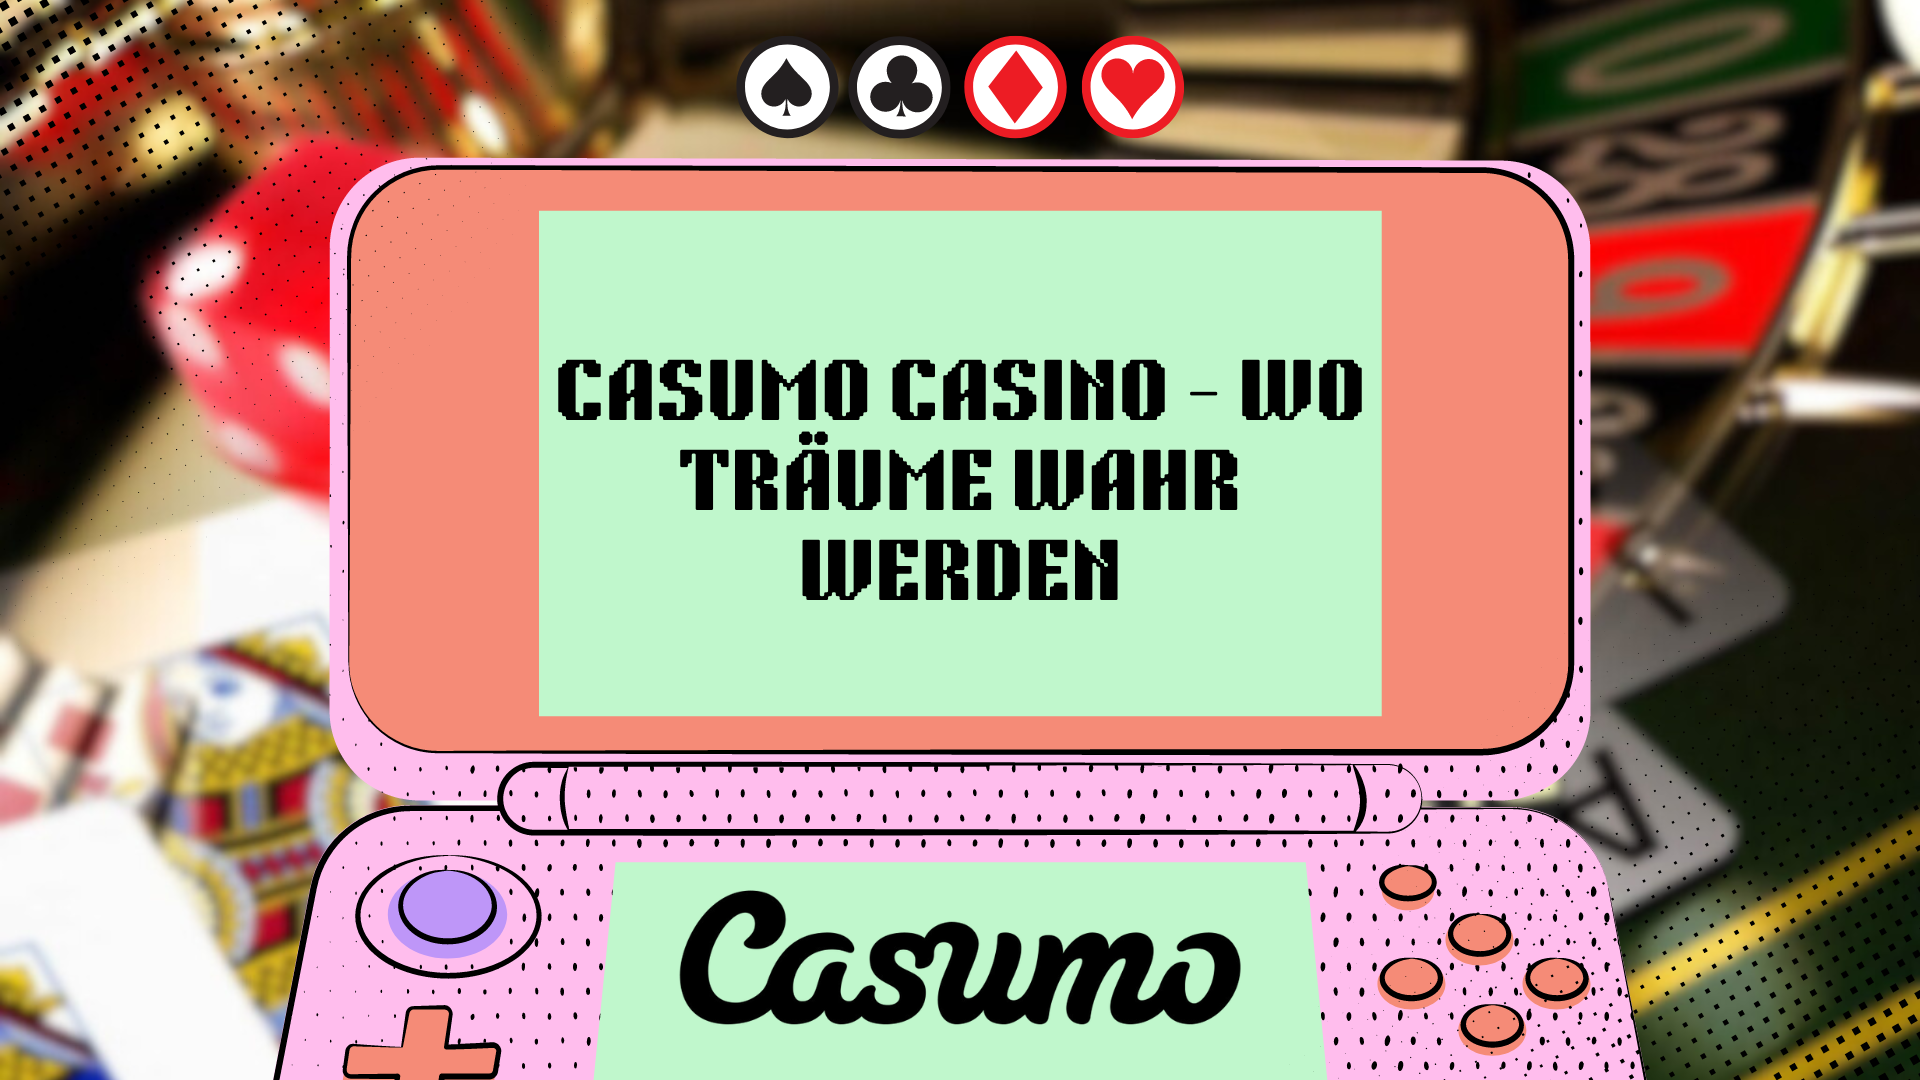 Casumo Casino — Wo Träume wahr werden